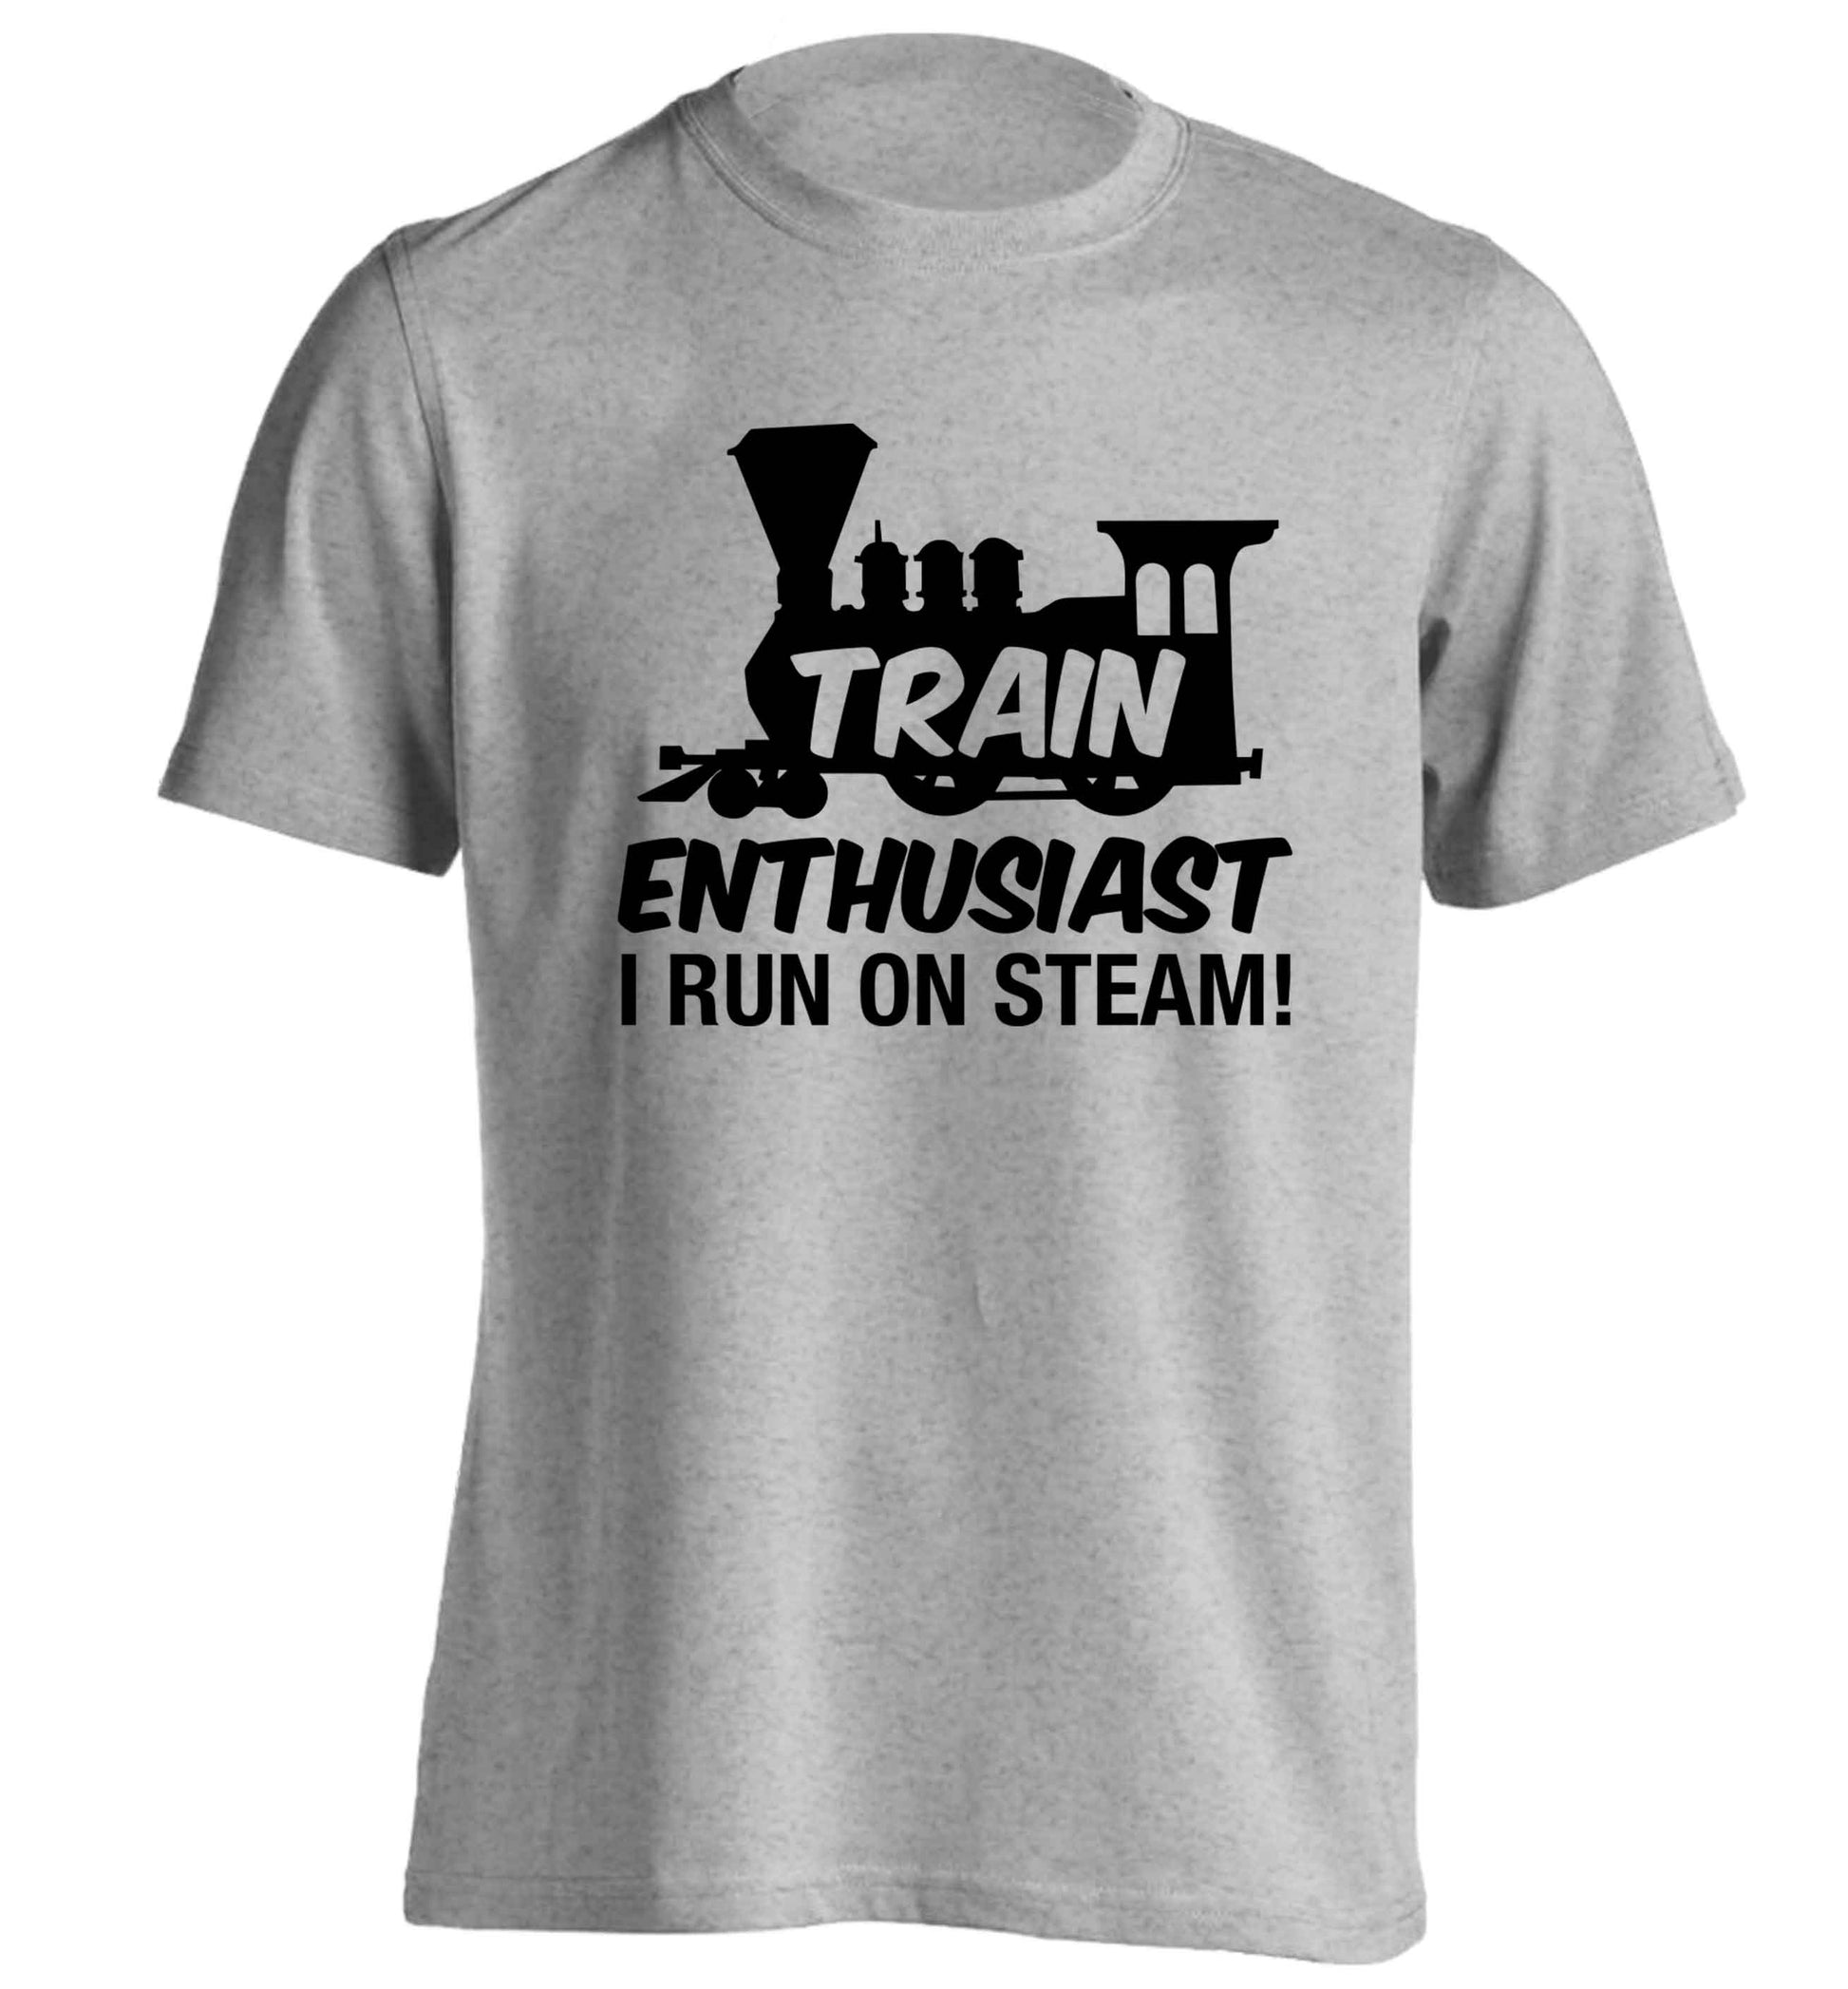 Train enthusiast I run on steam adults unisex grey Tshirt 2XL